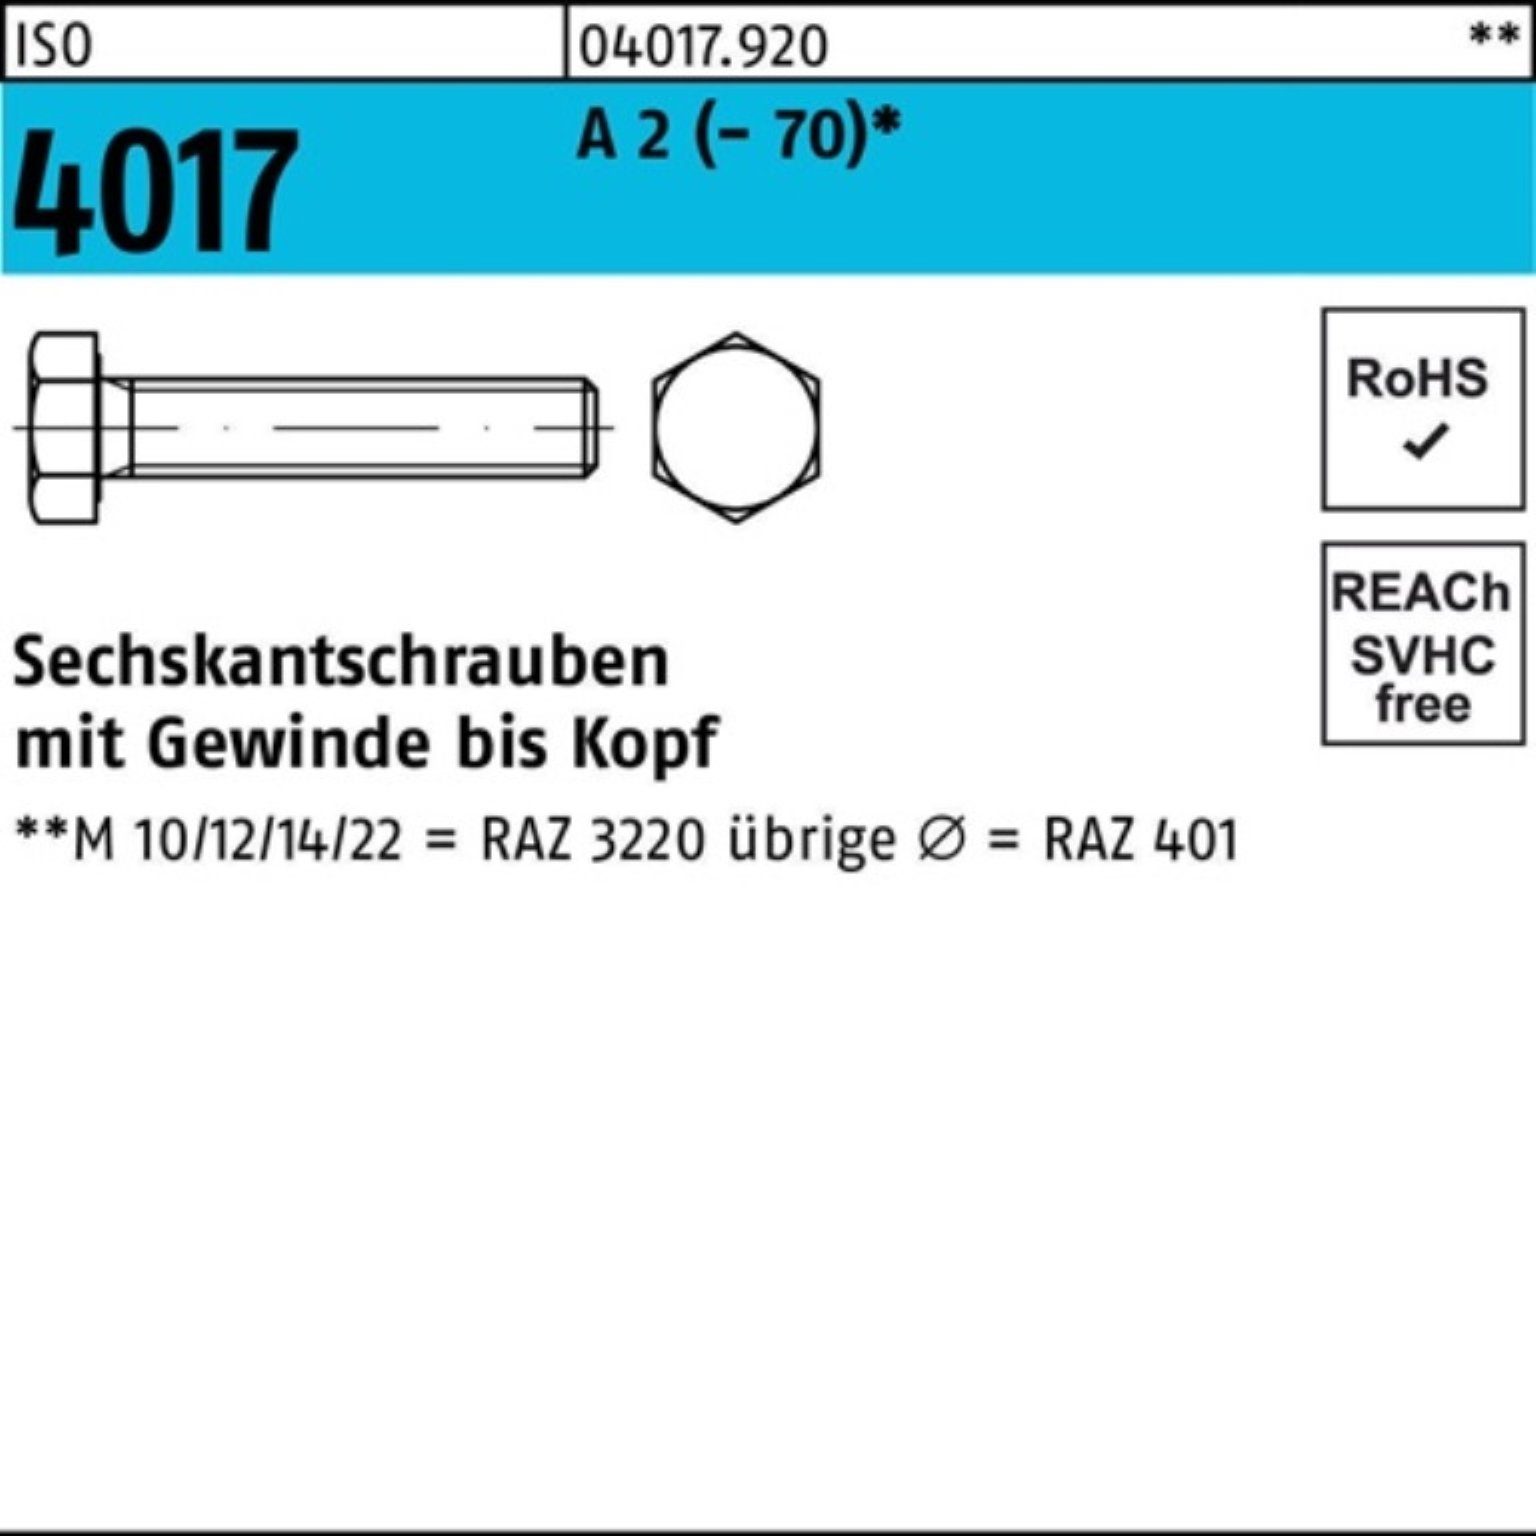 Bufab Sechskantschraube 200er Pack Sechskantschraube ISO 4017 VG M6x 22 A 2 (70) 200 Stück | Schrauben